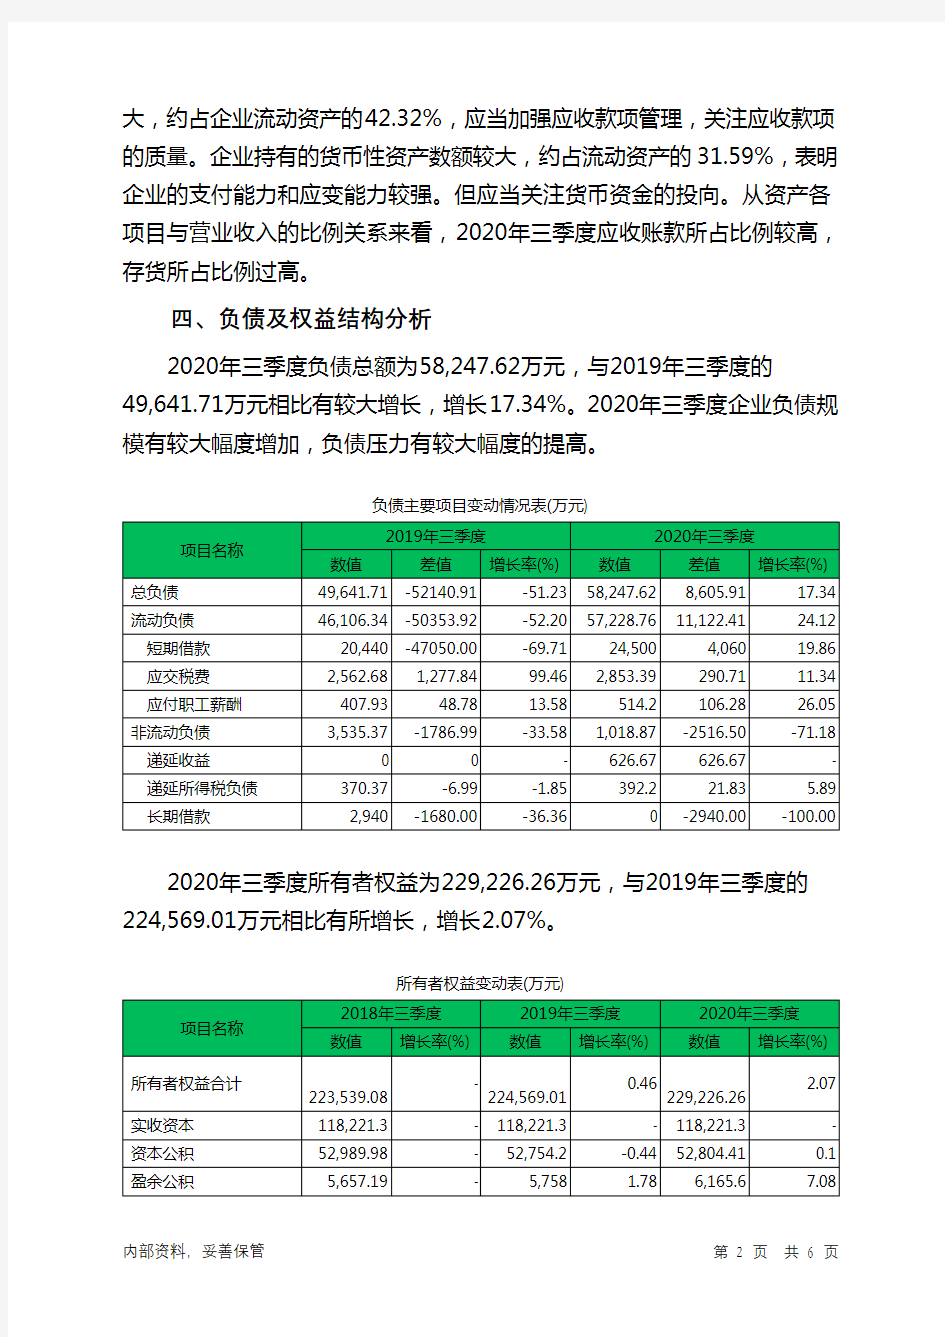 华仁药业2020年三季度决策水平分析报告